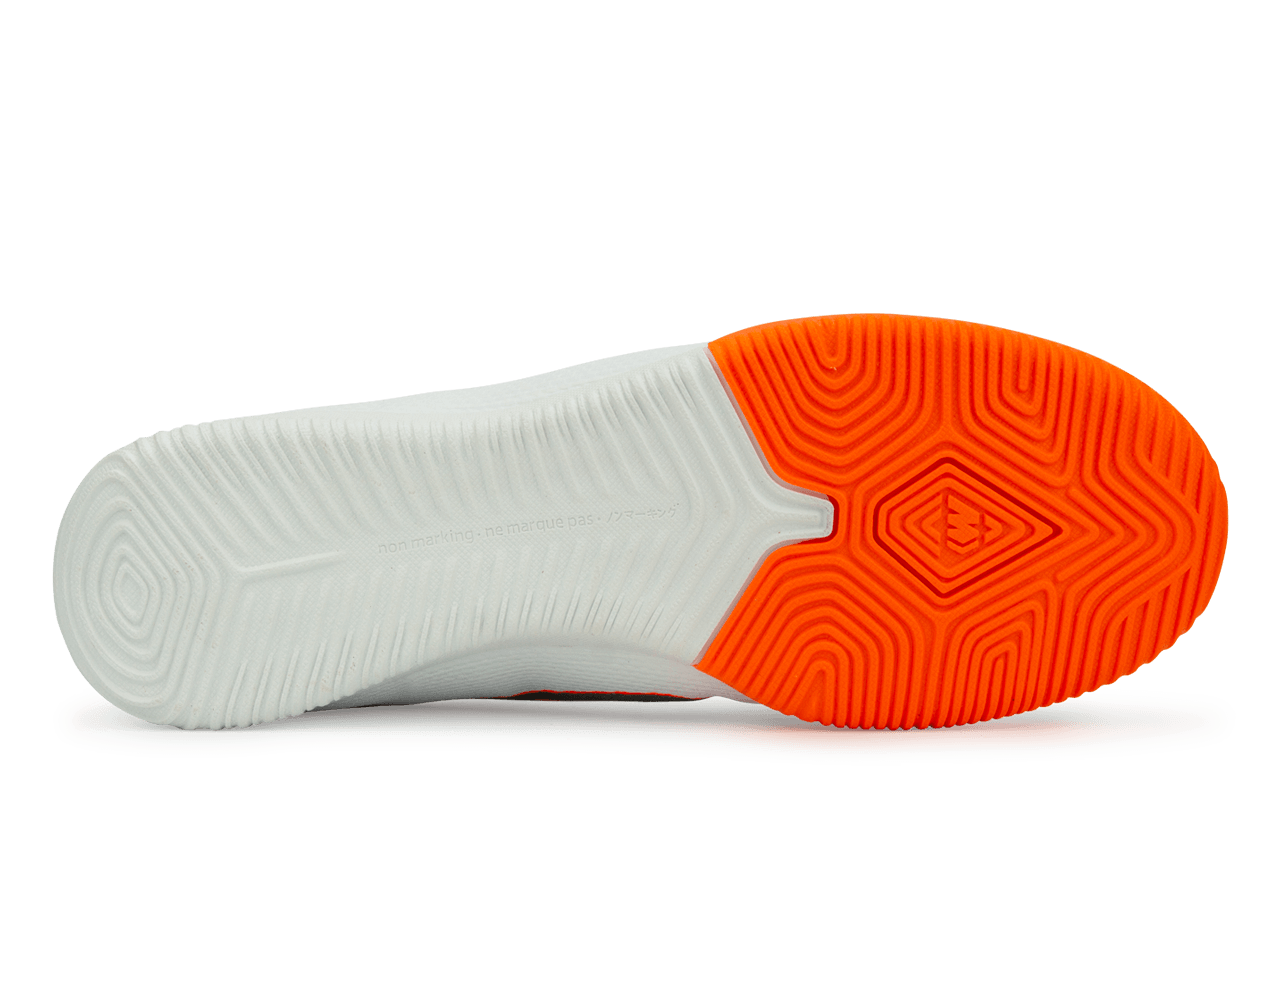 Nike Men's Mercurial Vapor 12 Academy Indoor Soccer Shoes White/Metallic Cool Grey/Total Orange